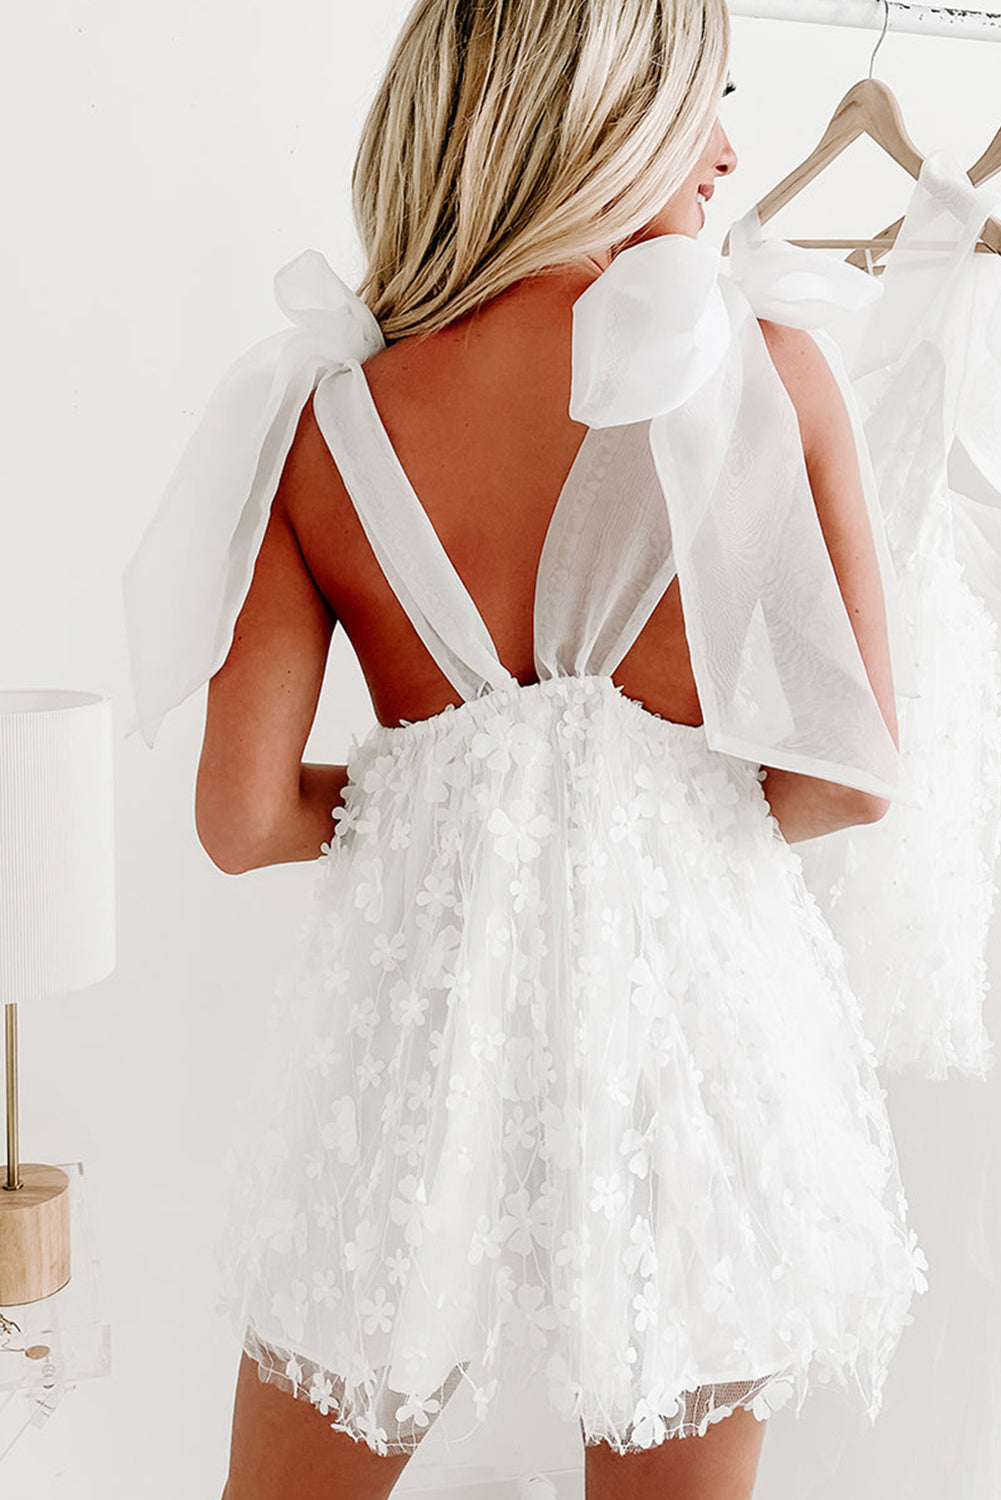 Elegantna napihnjena poročna obleka iz gaze z aplikacijo belega cvetja